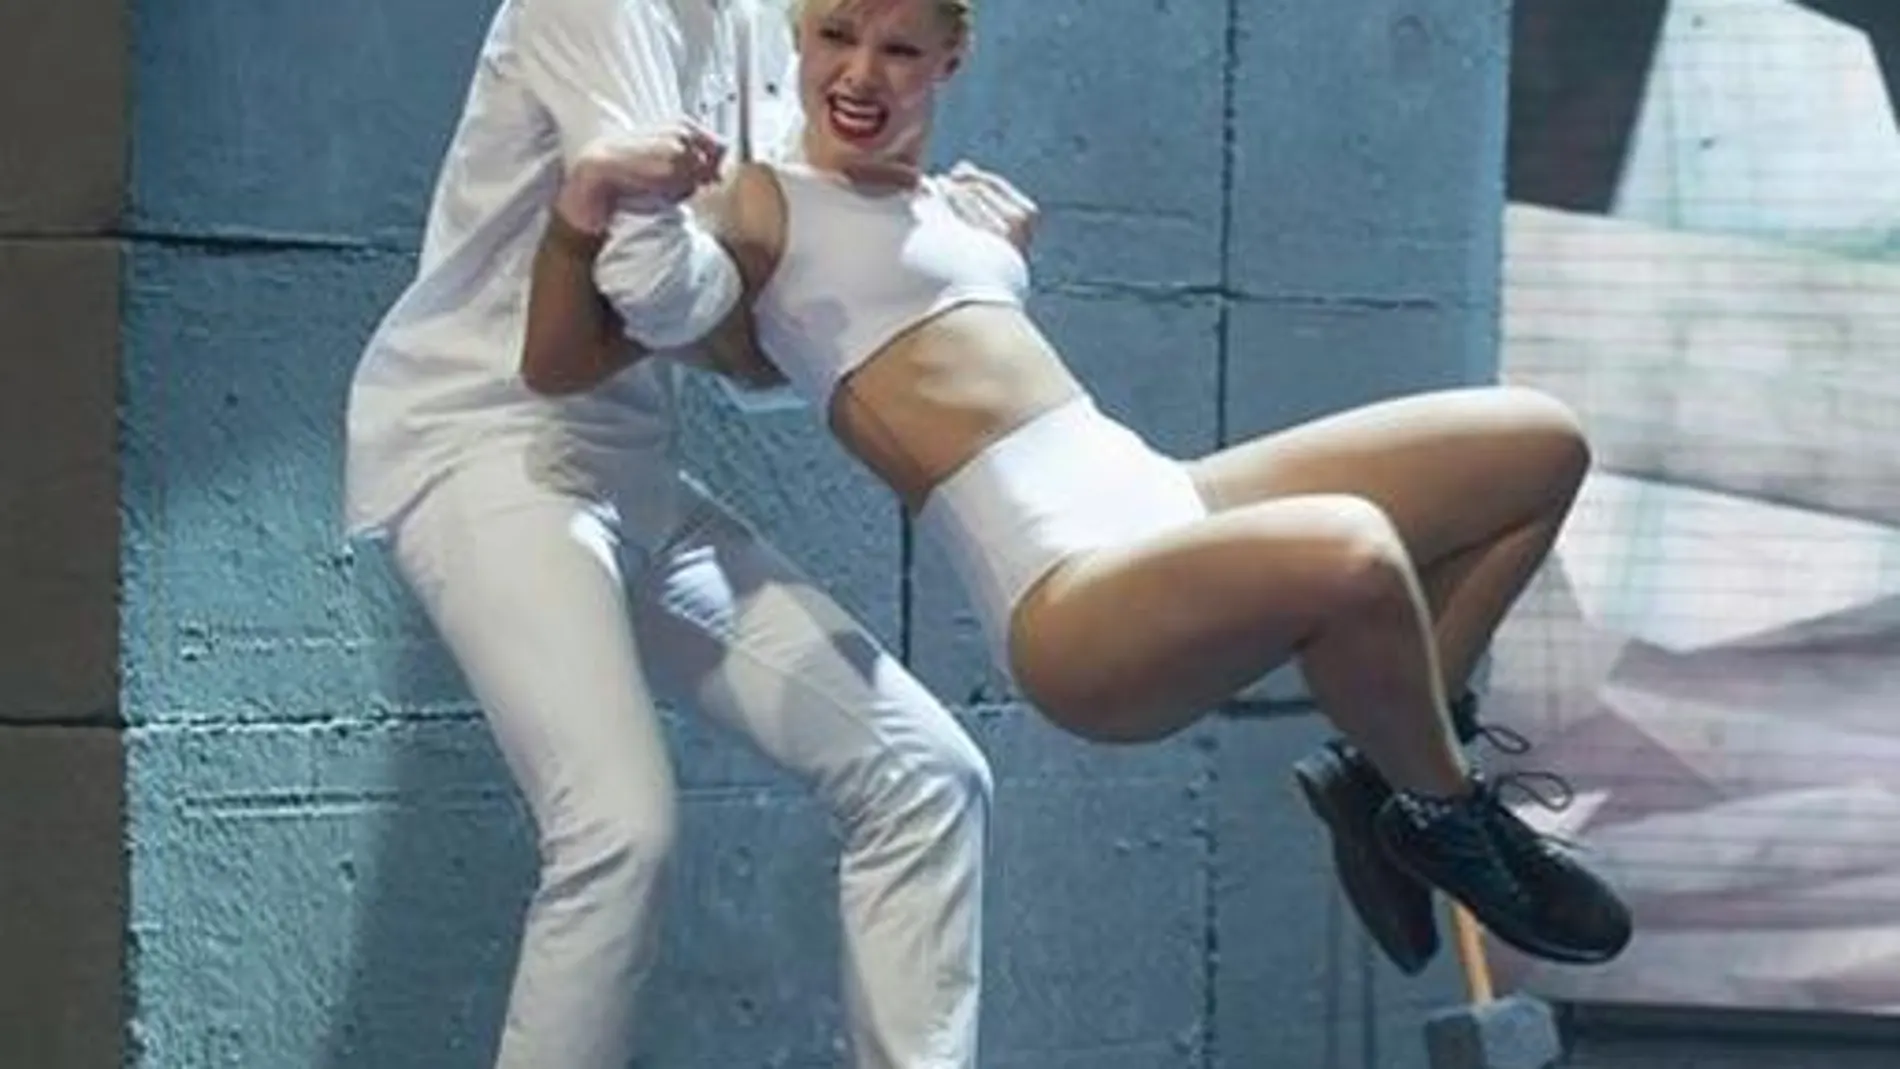 La pareja bailó al ritmo de "Wrecking ball"de Miley Cyrus